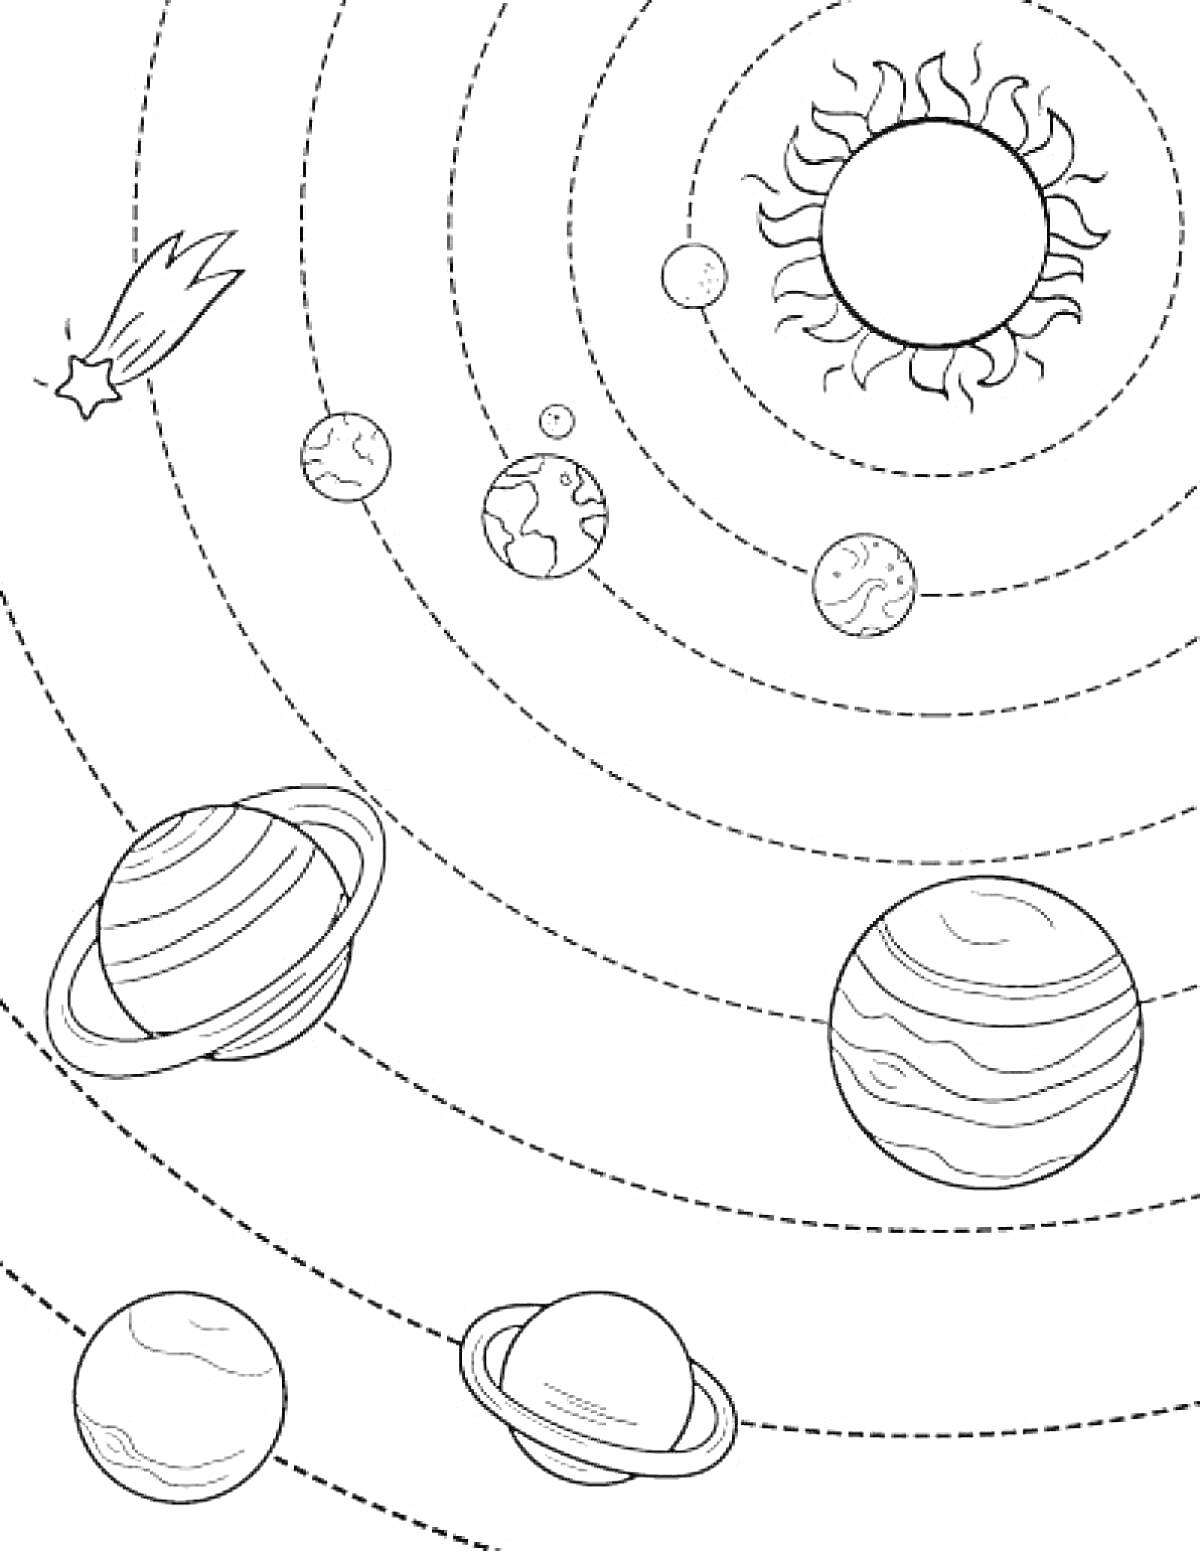 Раскраска Солнечная система с планетами, солнцем и кометой